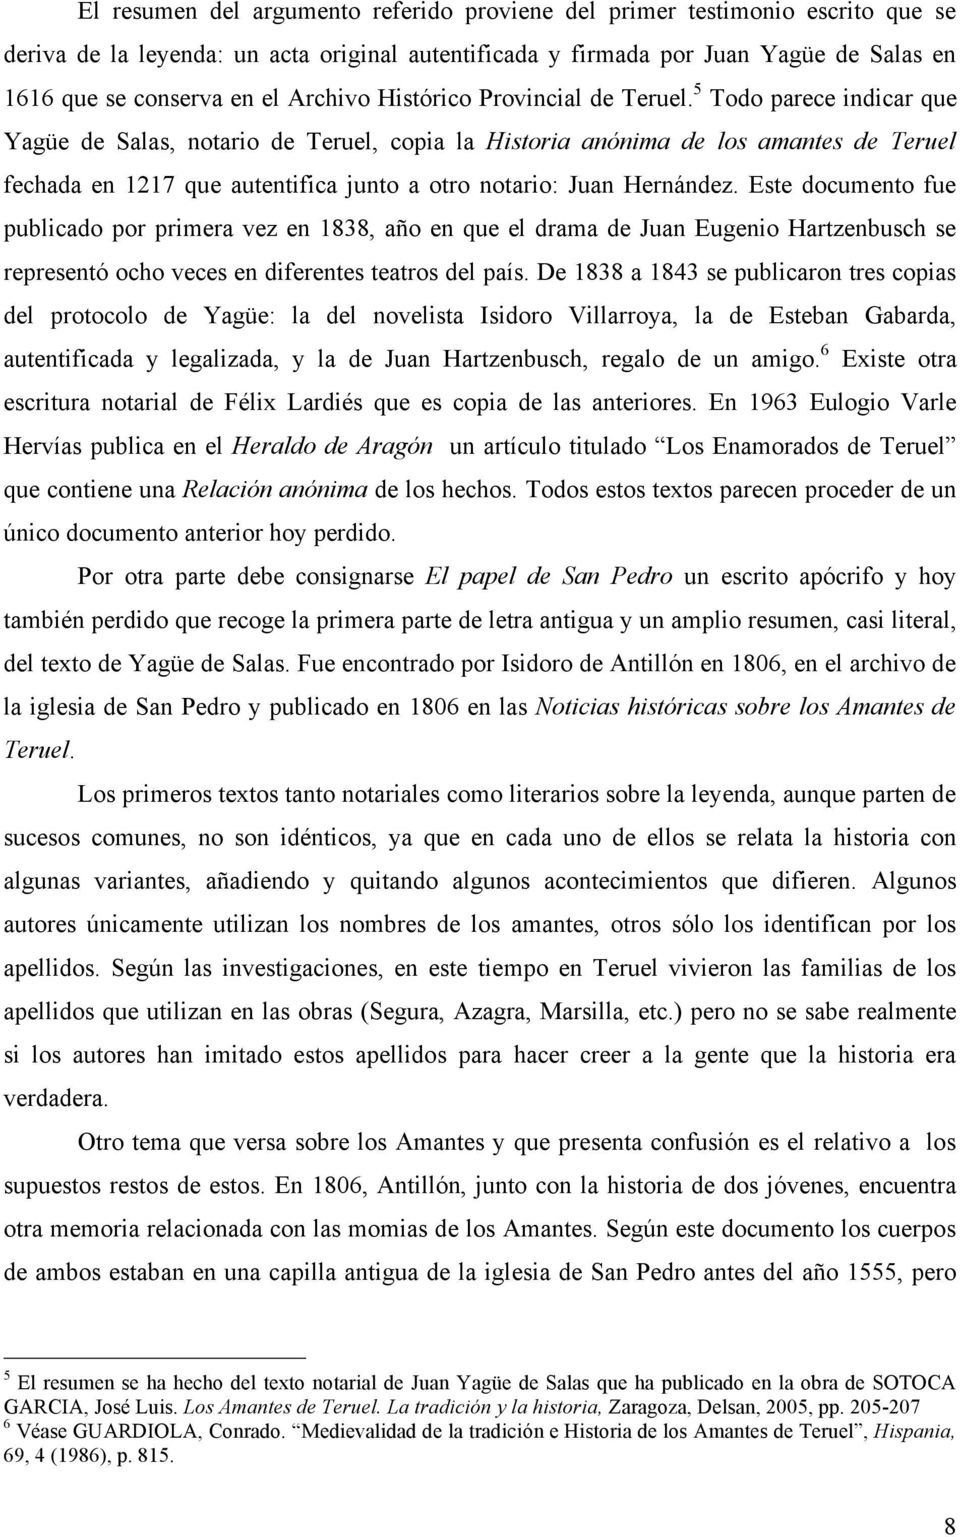 5 Todo parece indicar que Yagüe de Salas, notario de Teruel, copia la Historia anónima de los amantes de Teruel fechada en 1217 que autentifica junto a otro notario: Juan Hernández.